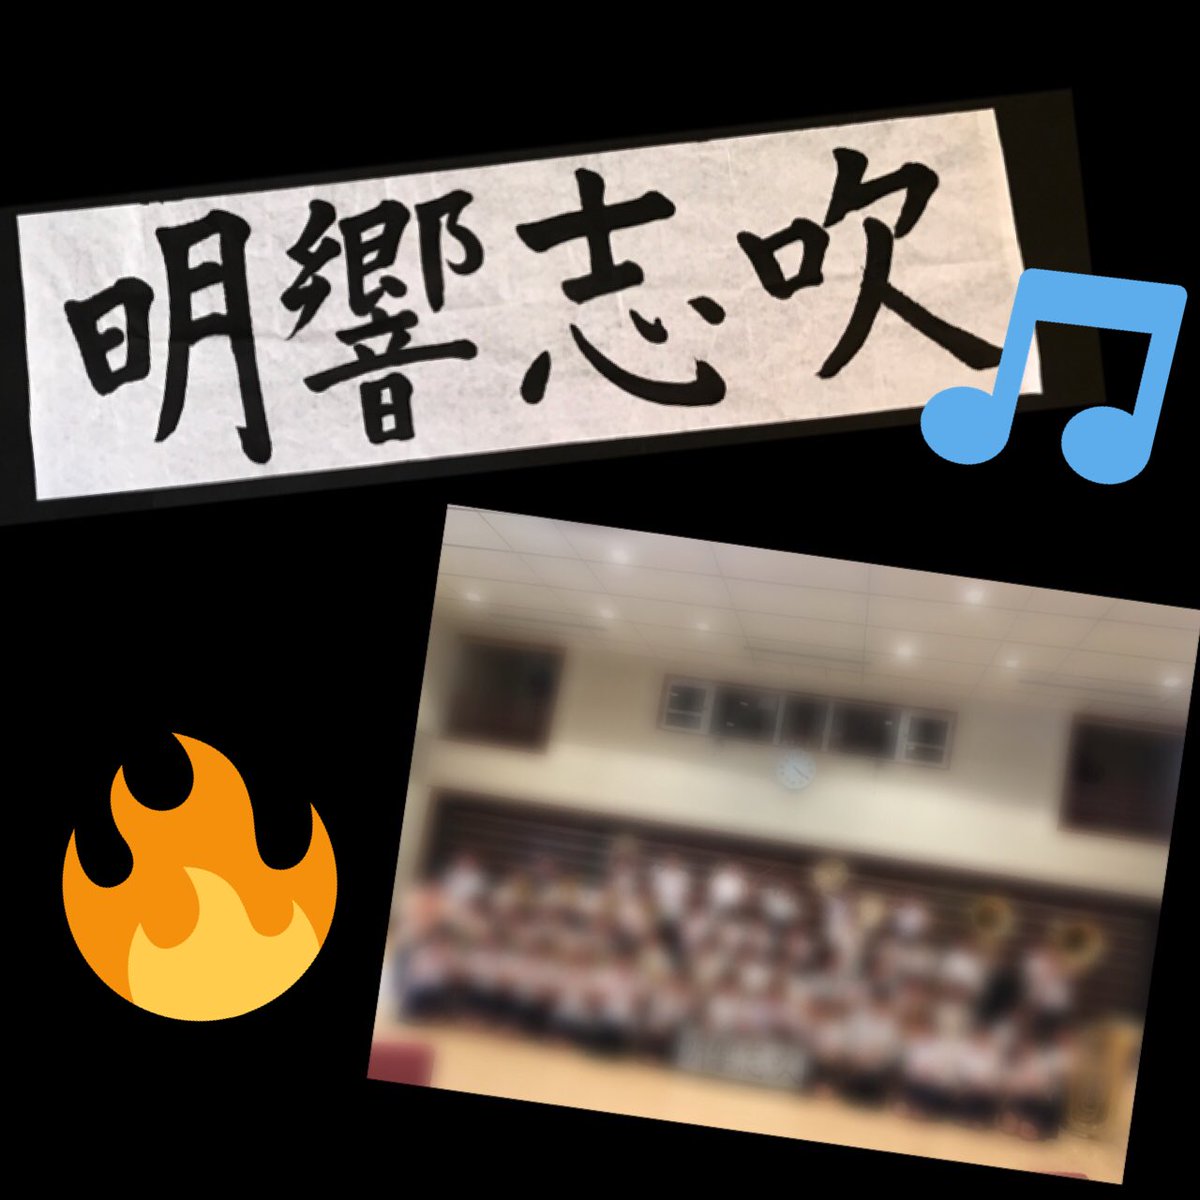 横浜平沼高校吹奏楽部 בטוויטר ついに明日は横浜吹奏楽コンクールです 行事も沢山あり大変でしたが 今まで一生懸命練習してきた成果を十分に発揮して良い演奏できるように部員一同頑張ってきます 応援よろしくお願いします 明響志吹は 今年のスローガン